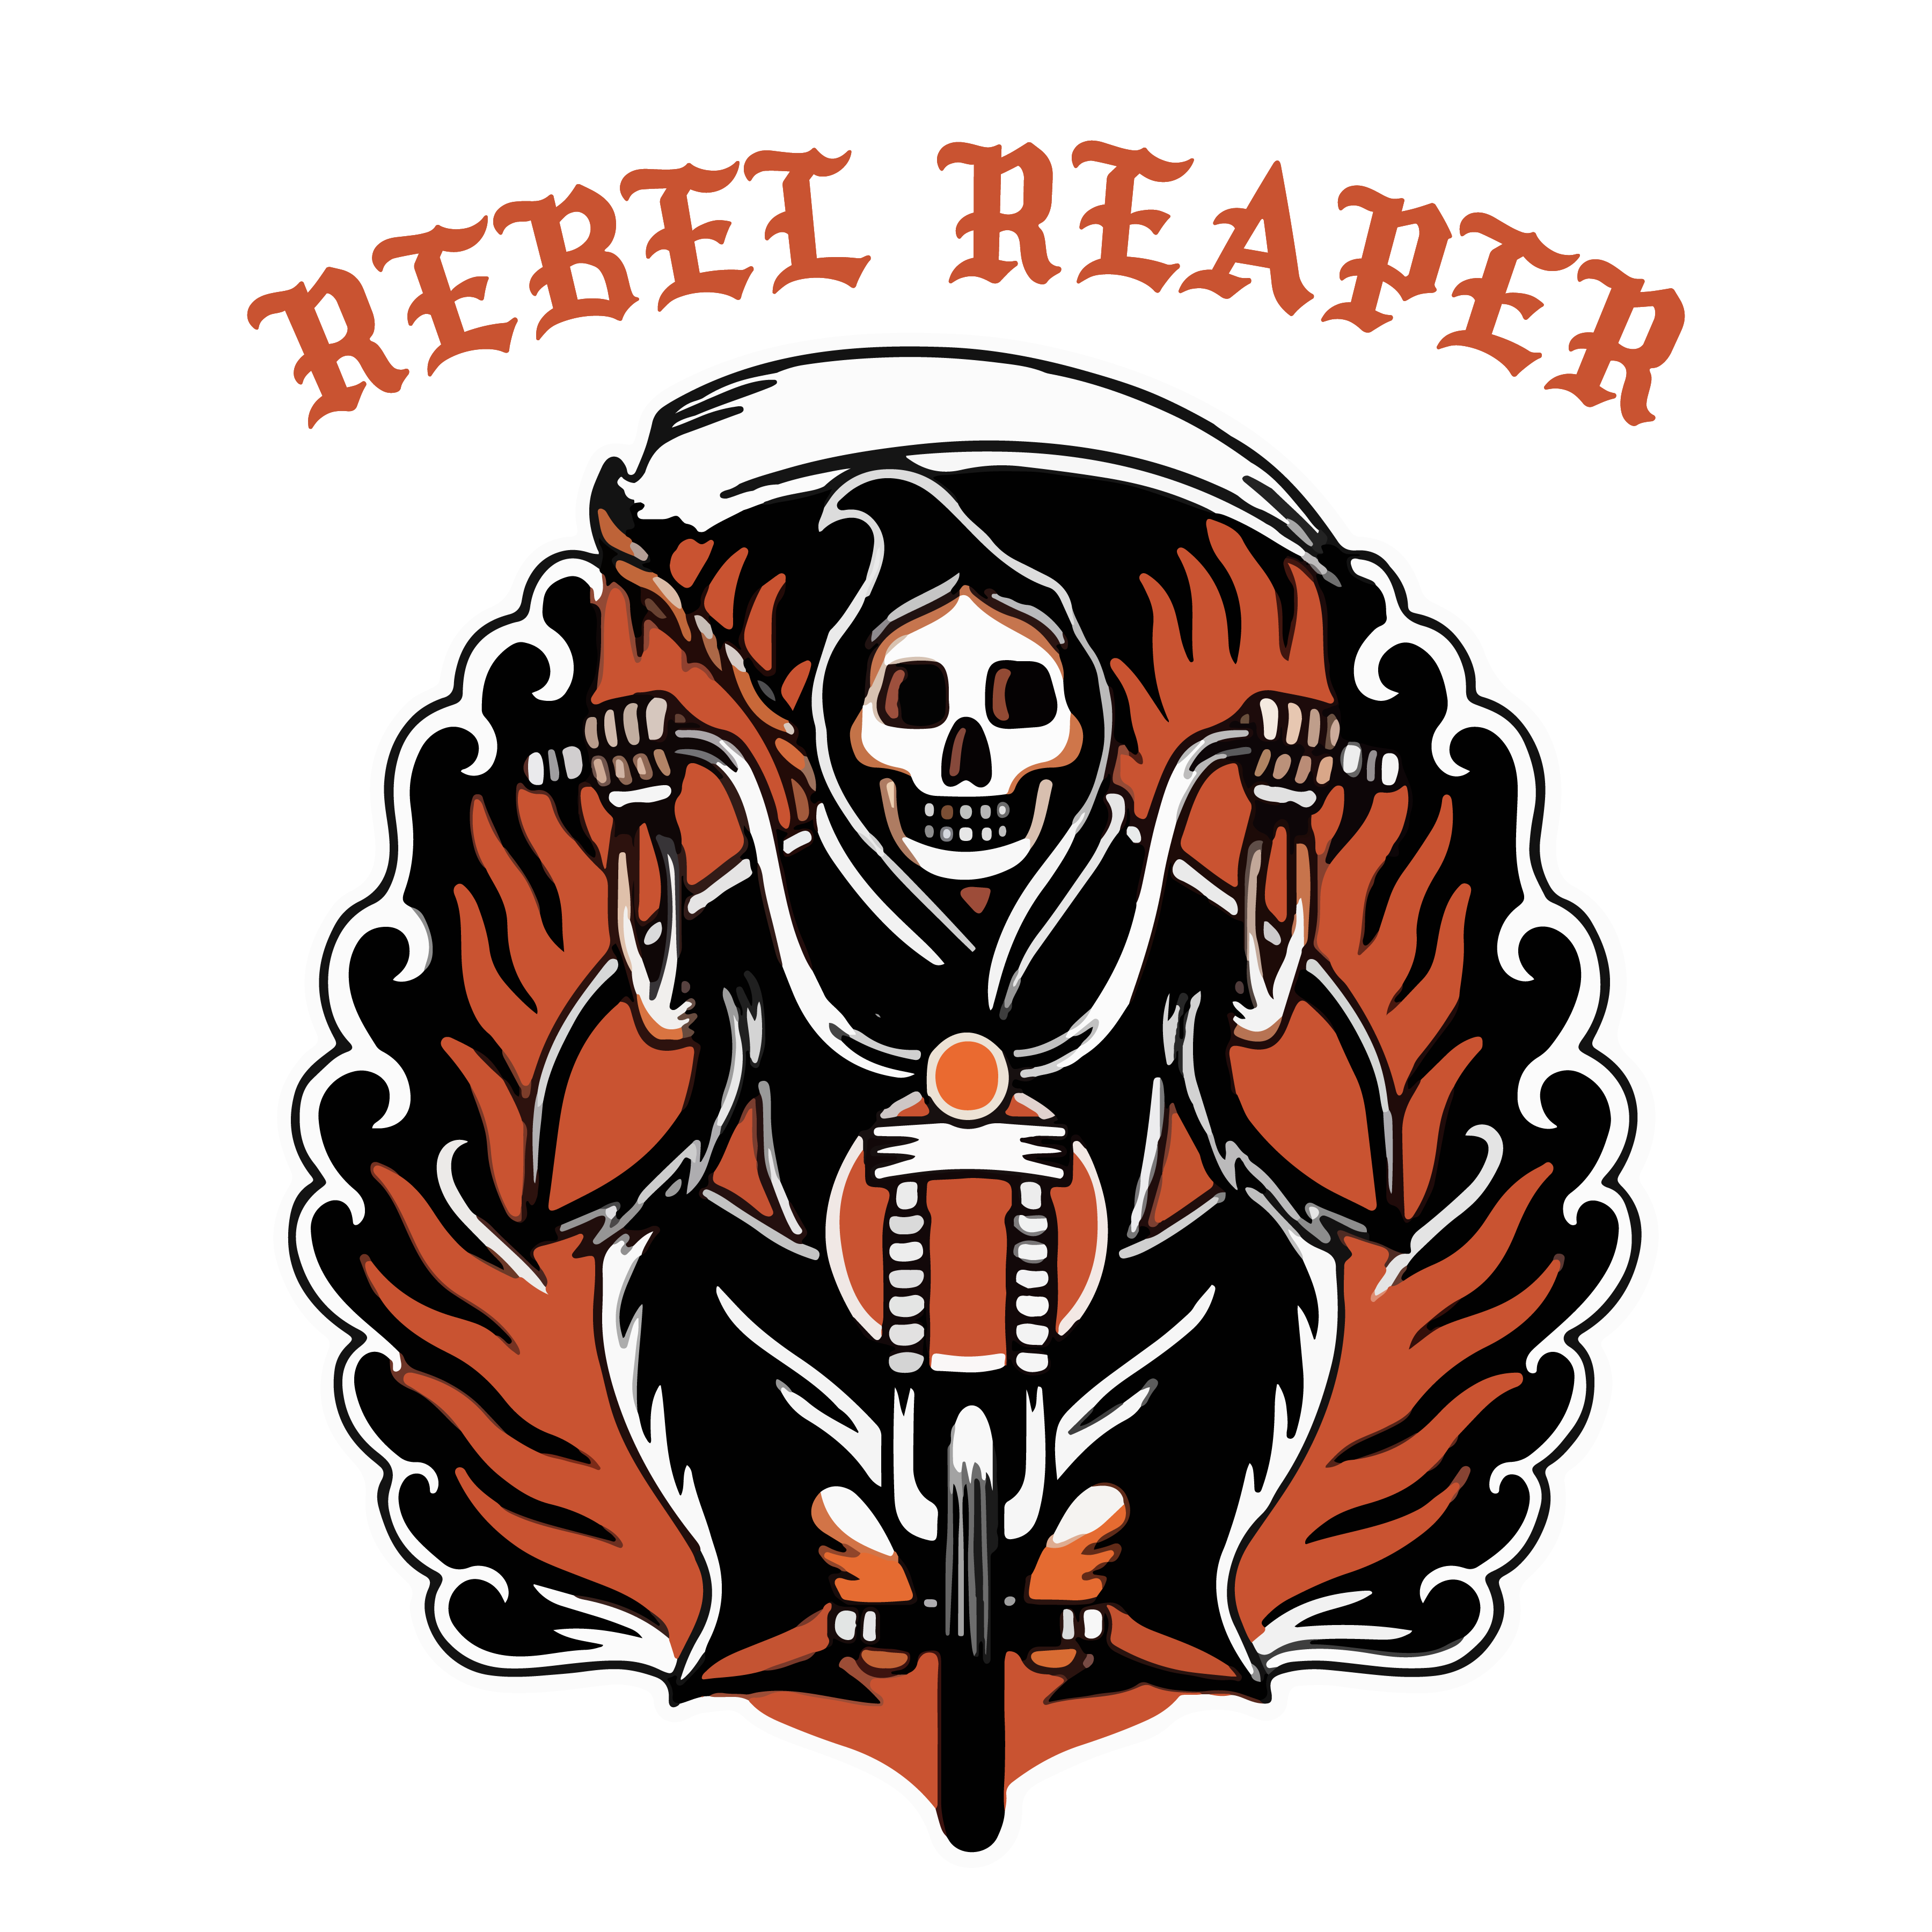 rebel_brand_logos.gif (714×590)